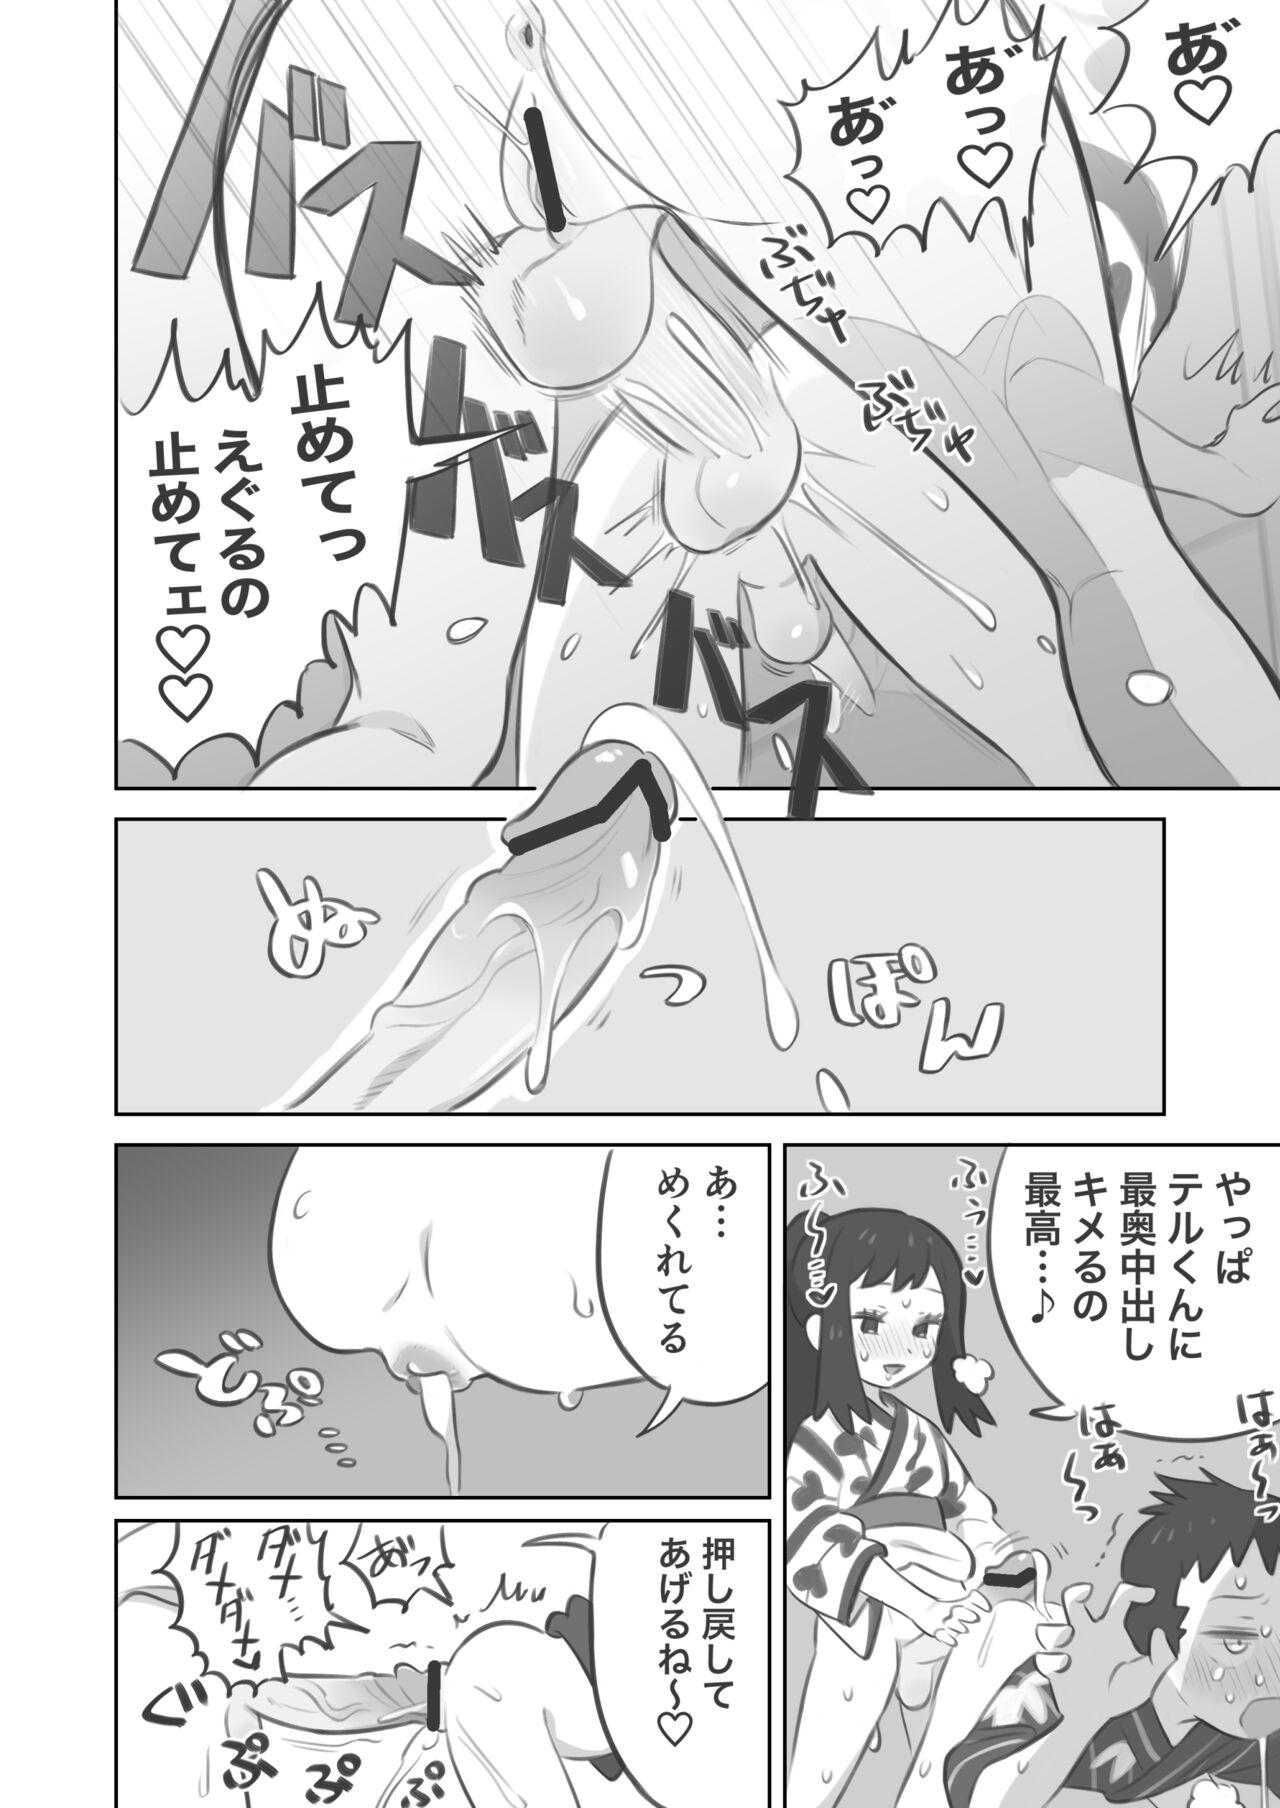 Cornudo Futanari shujinkō-chan ga Teru senpai o horu manga 2 - Pokemon | pocket monsters Bokep - Page 10